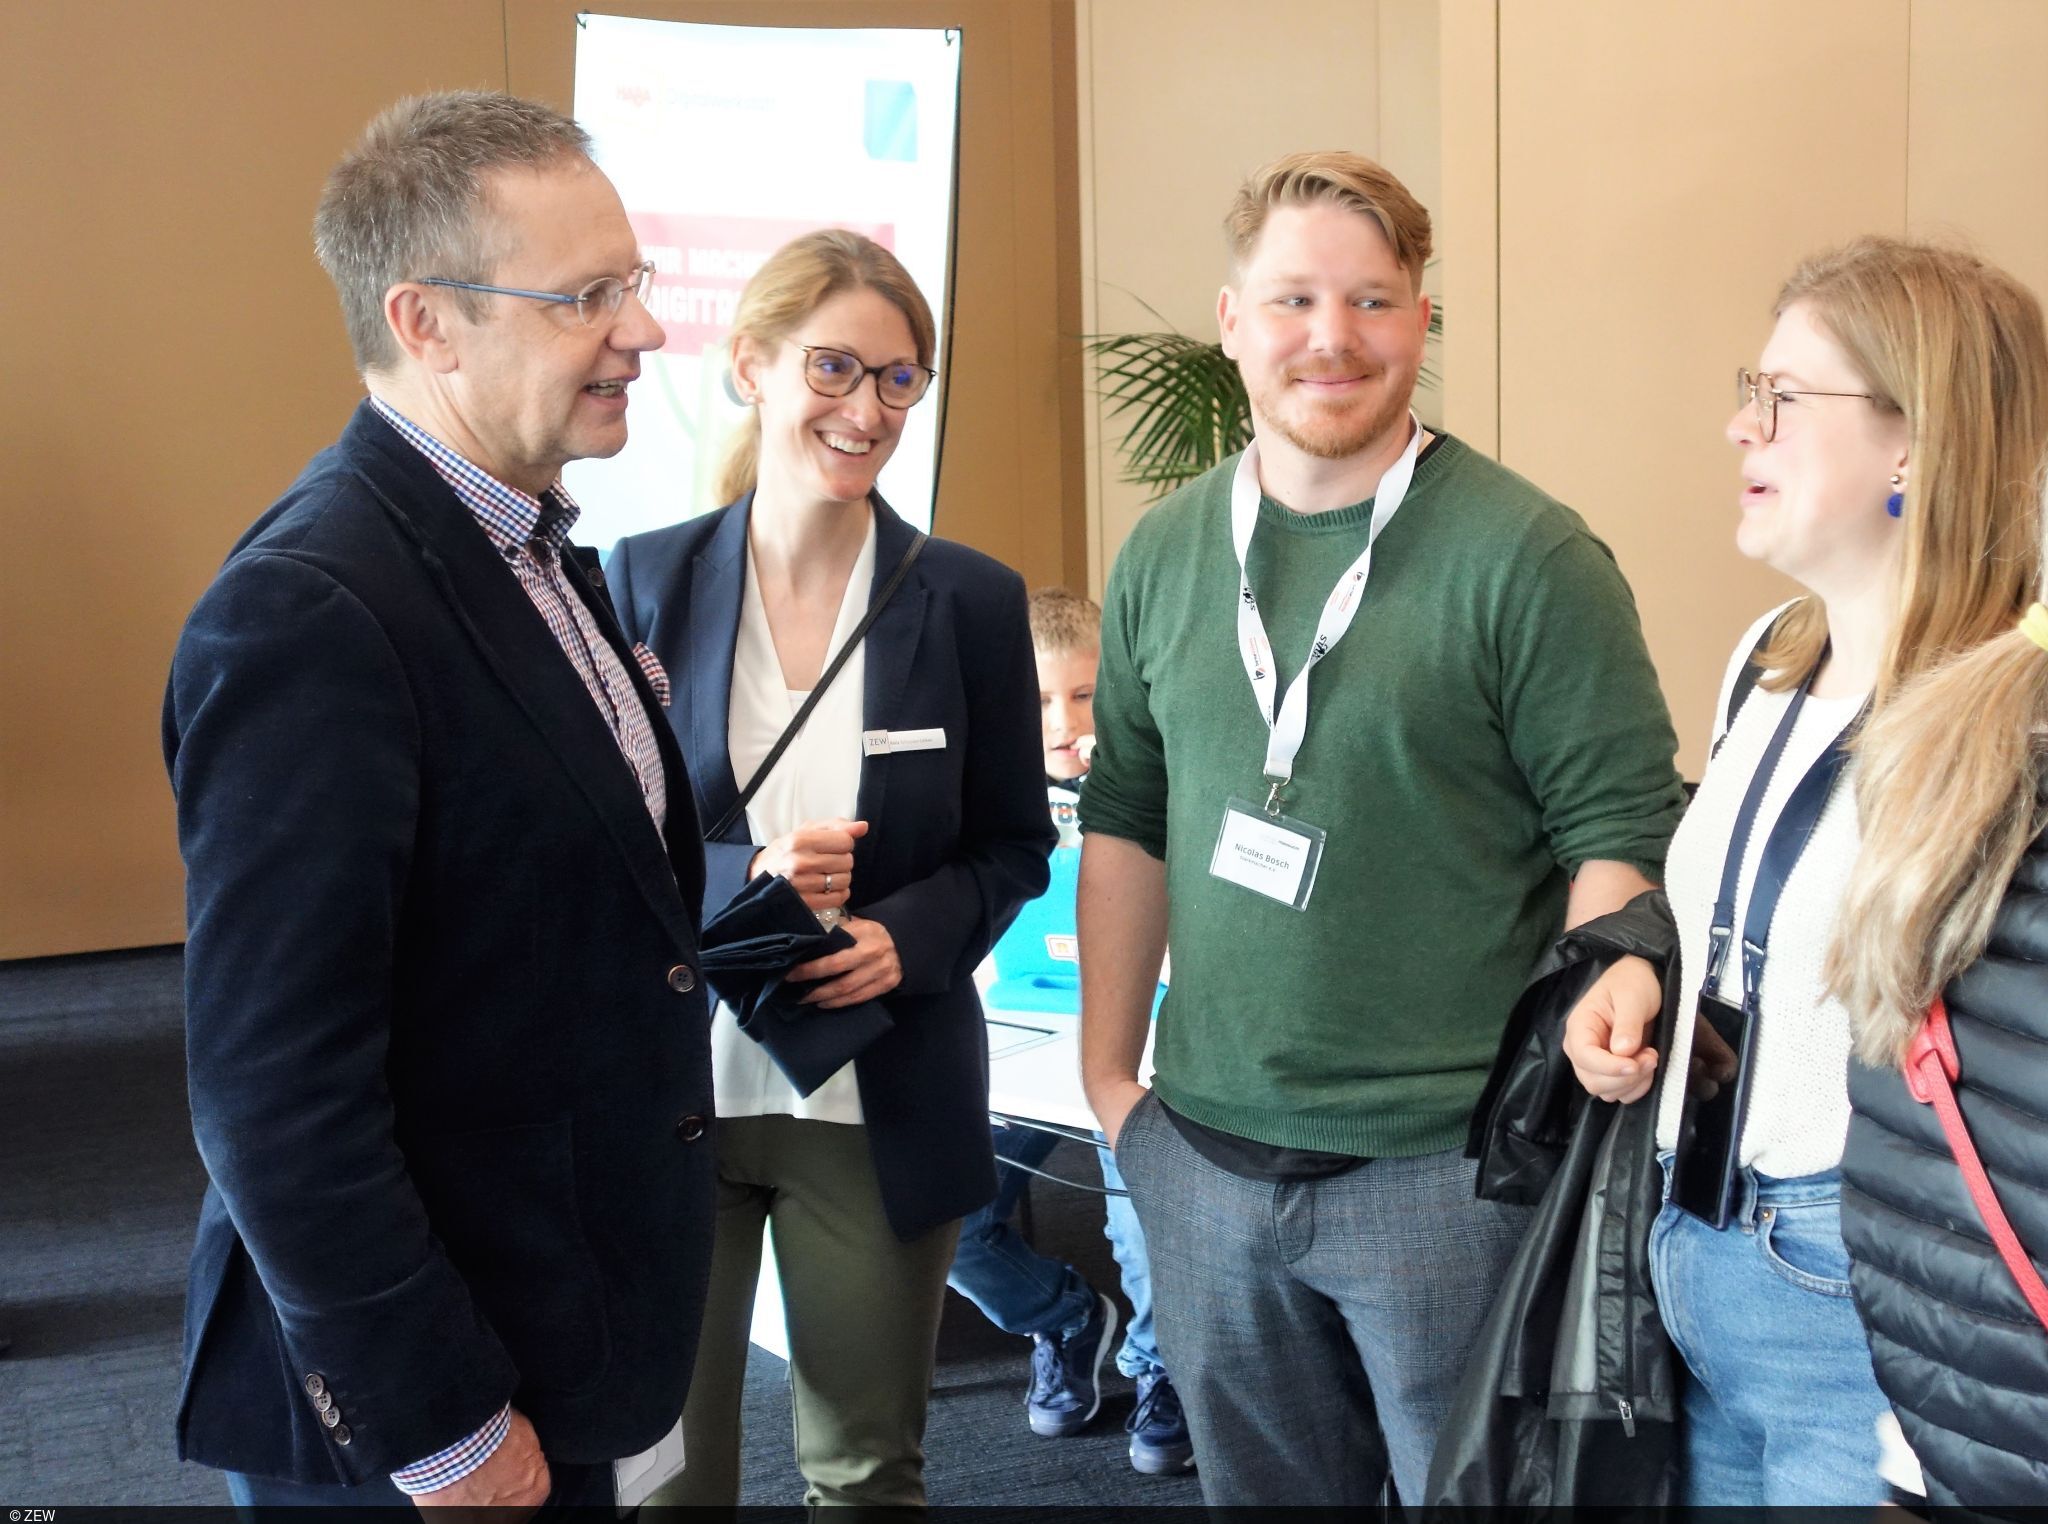 Kaufmännischer Direktor des ZEW, Thomas Kohl, links im Bild, und Karla Schneider-Dörken, rechts daneben, im Gespräch mit Gästen.